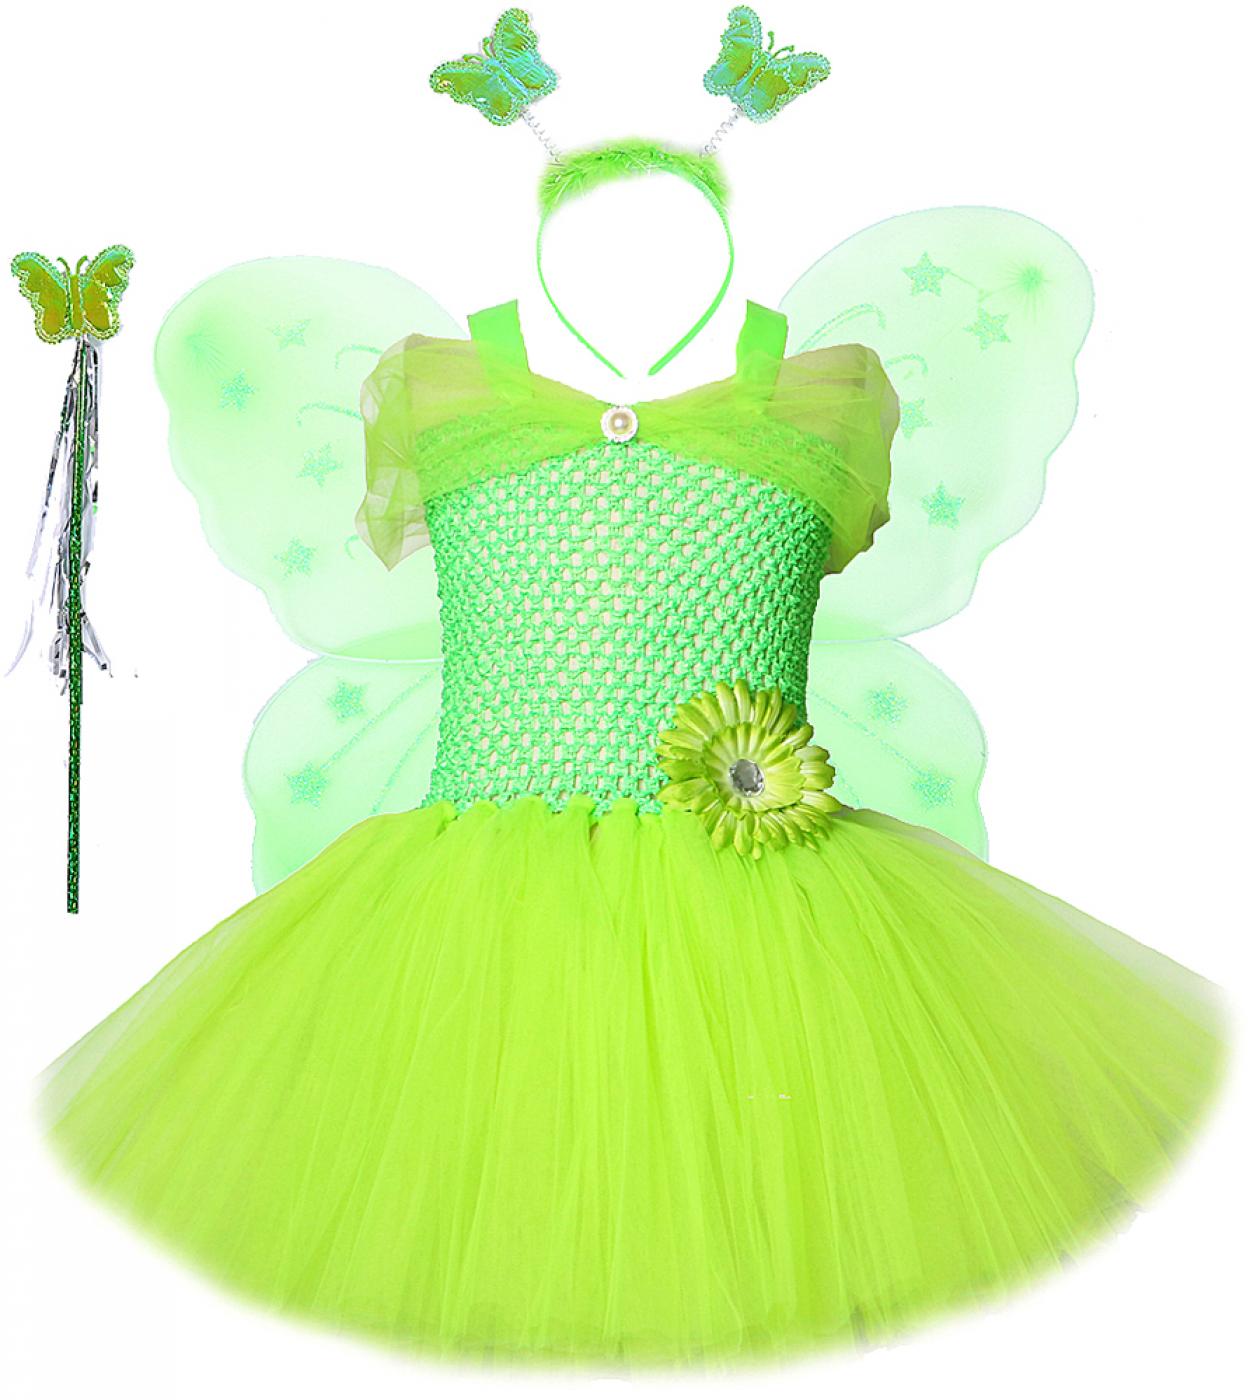 فستان توتو للفتيات من الجنية الخضراء مع أجنحة الفراشة فساتين أميرة لأعياد الميلاد للأطفال أزياء الكريسماس للفتيات الصغيرات نعم ج